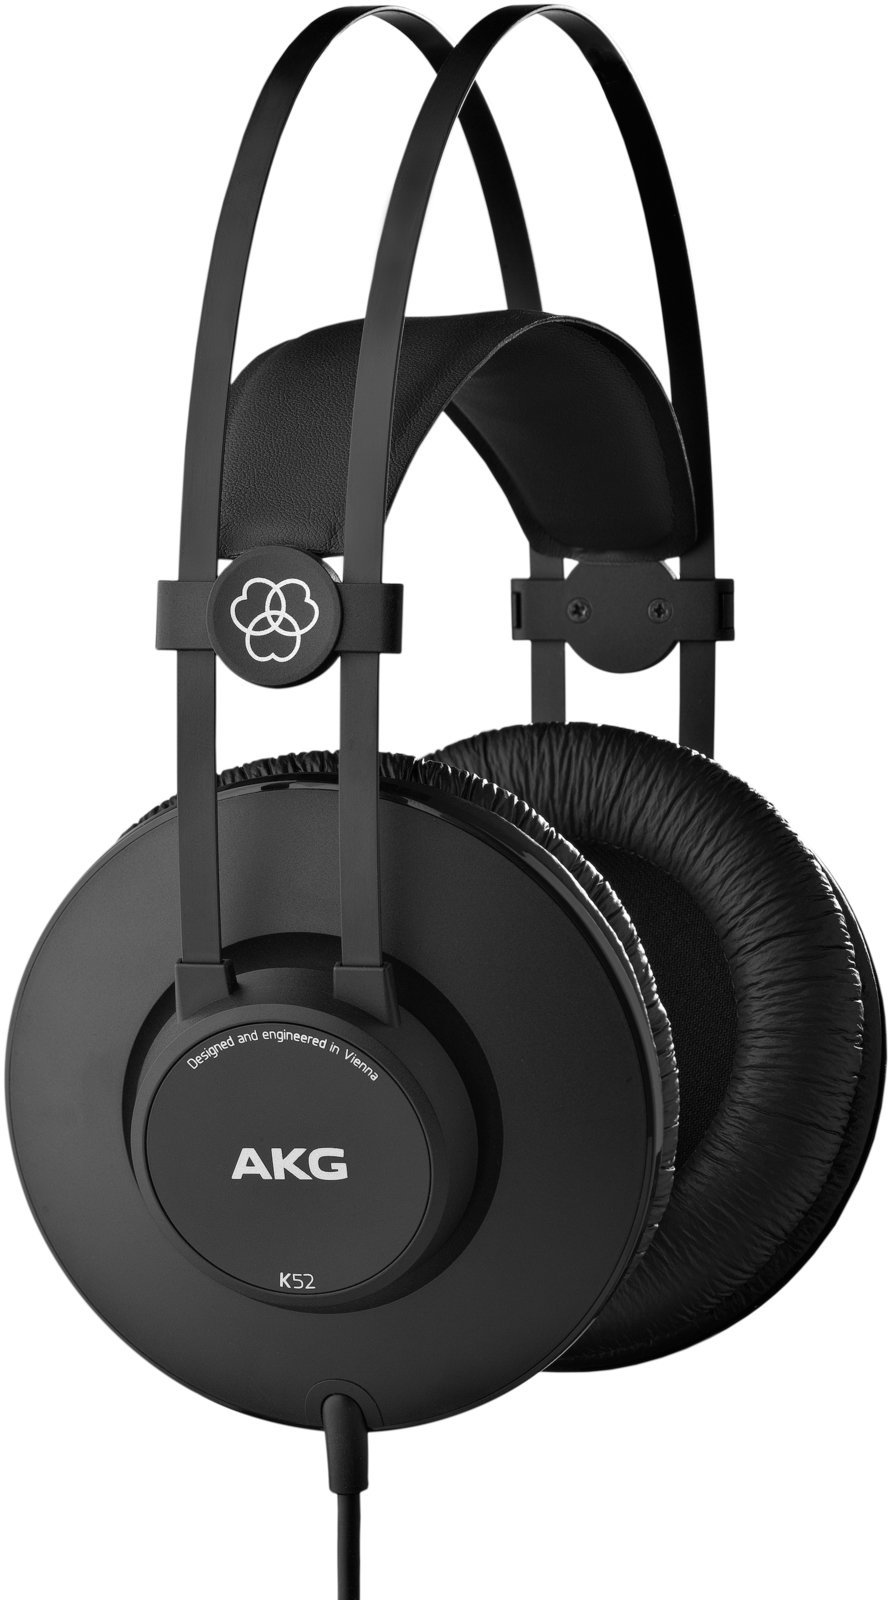 Studio-hovedtelefoner AKG K52